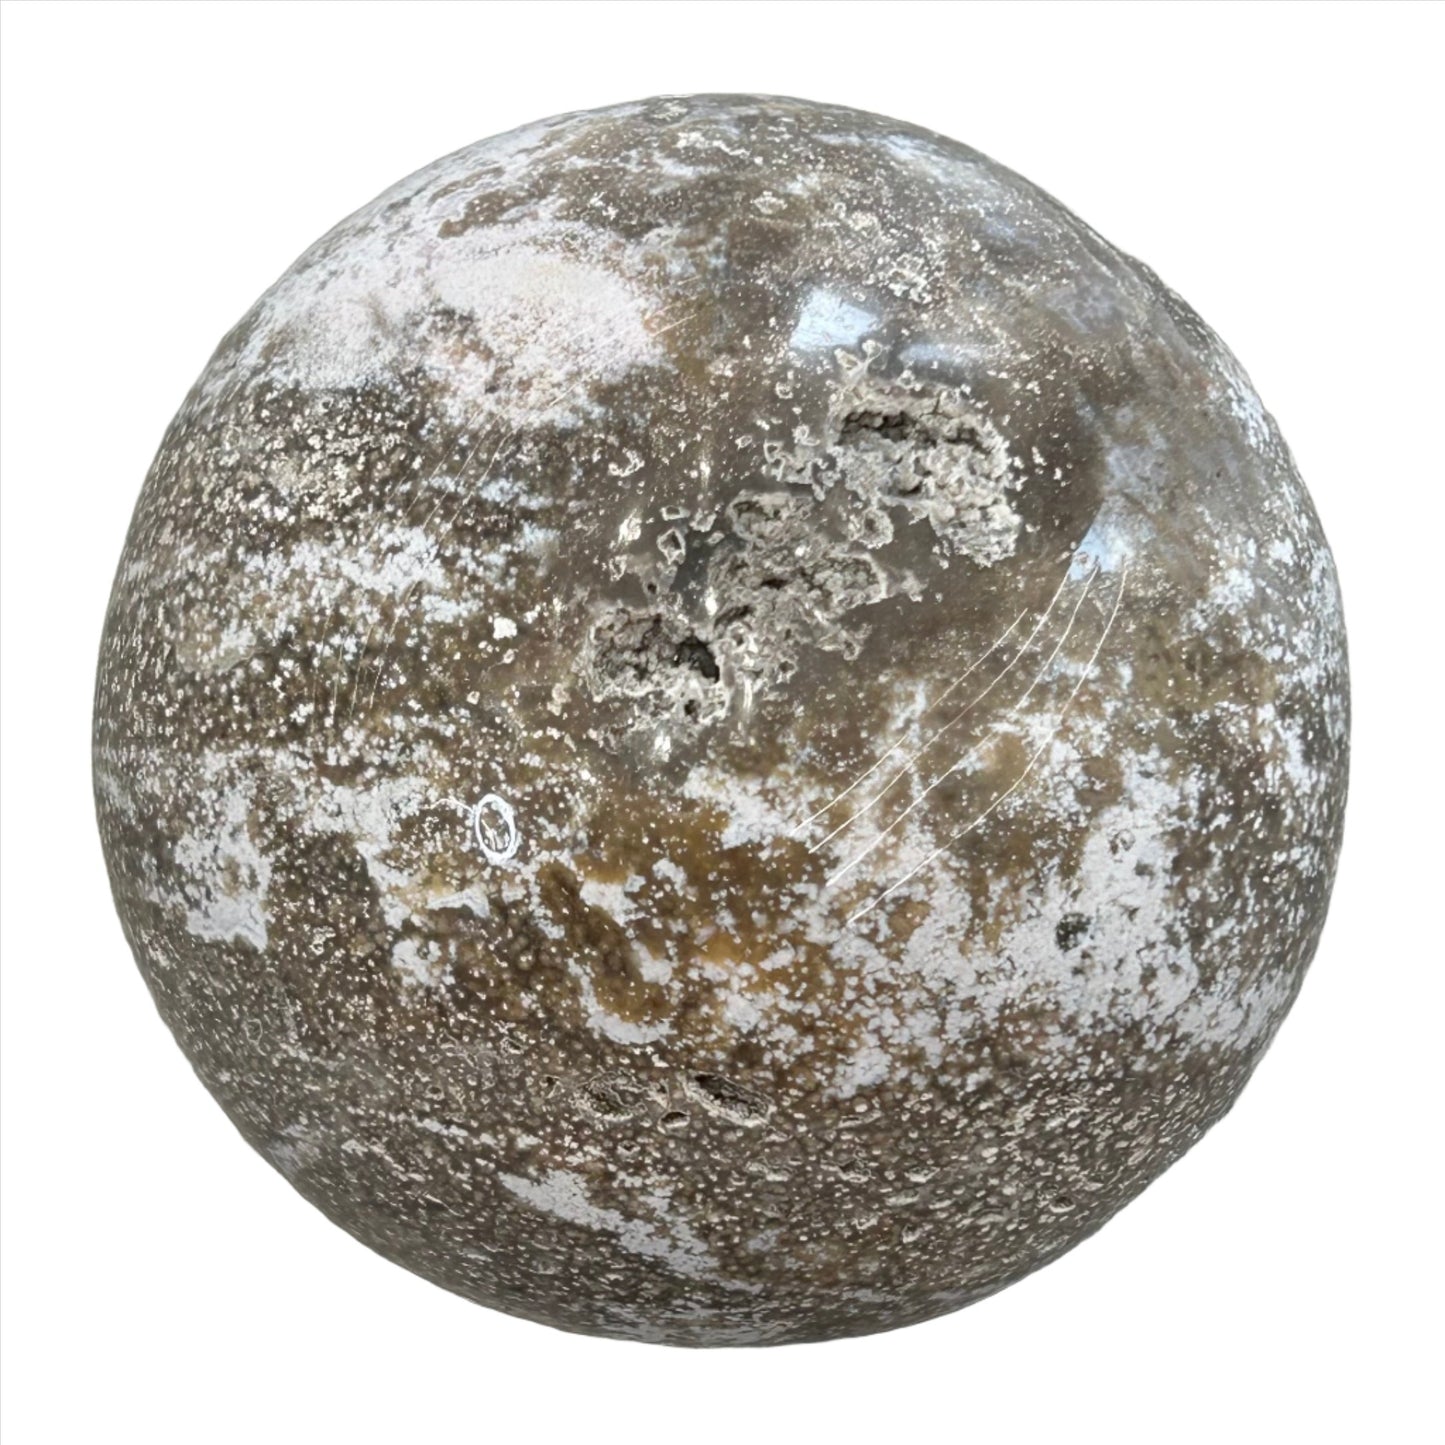 Ocean Jasper Sphere 1613g